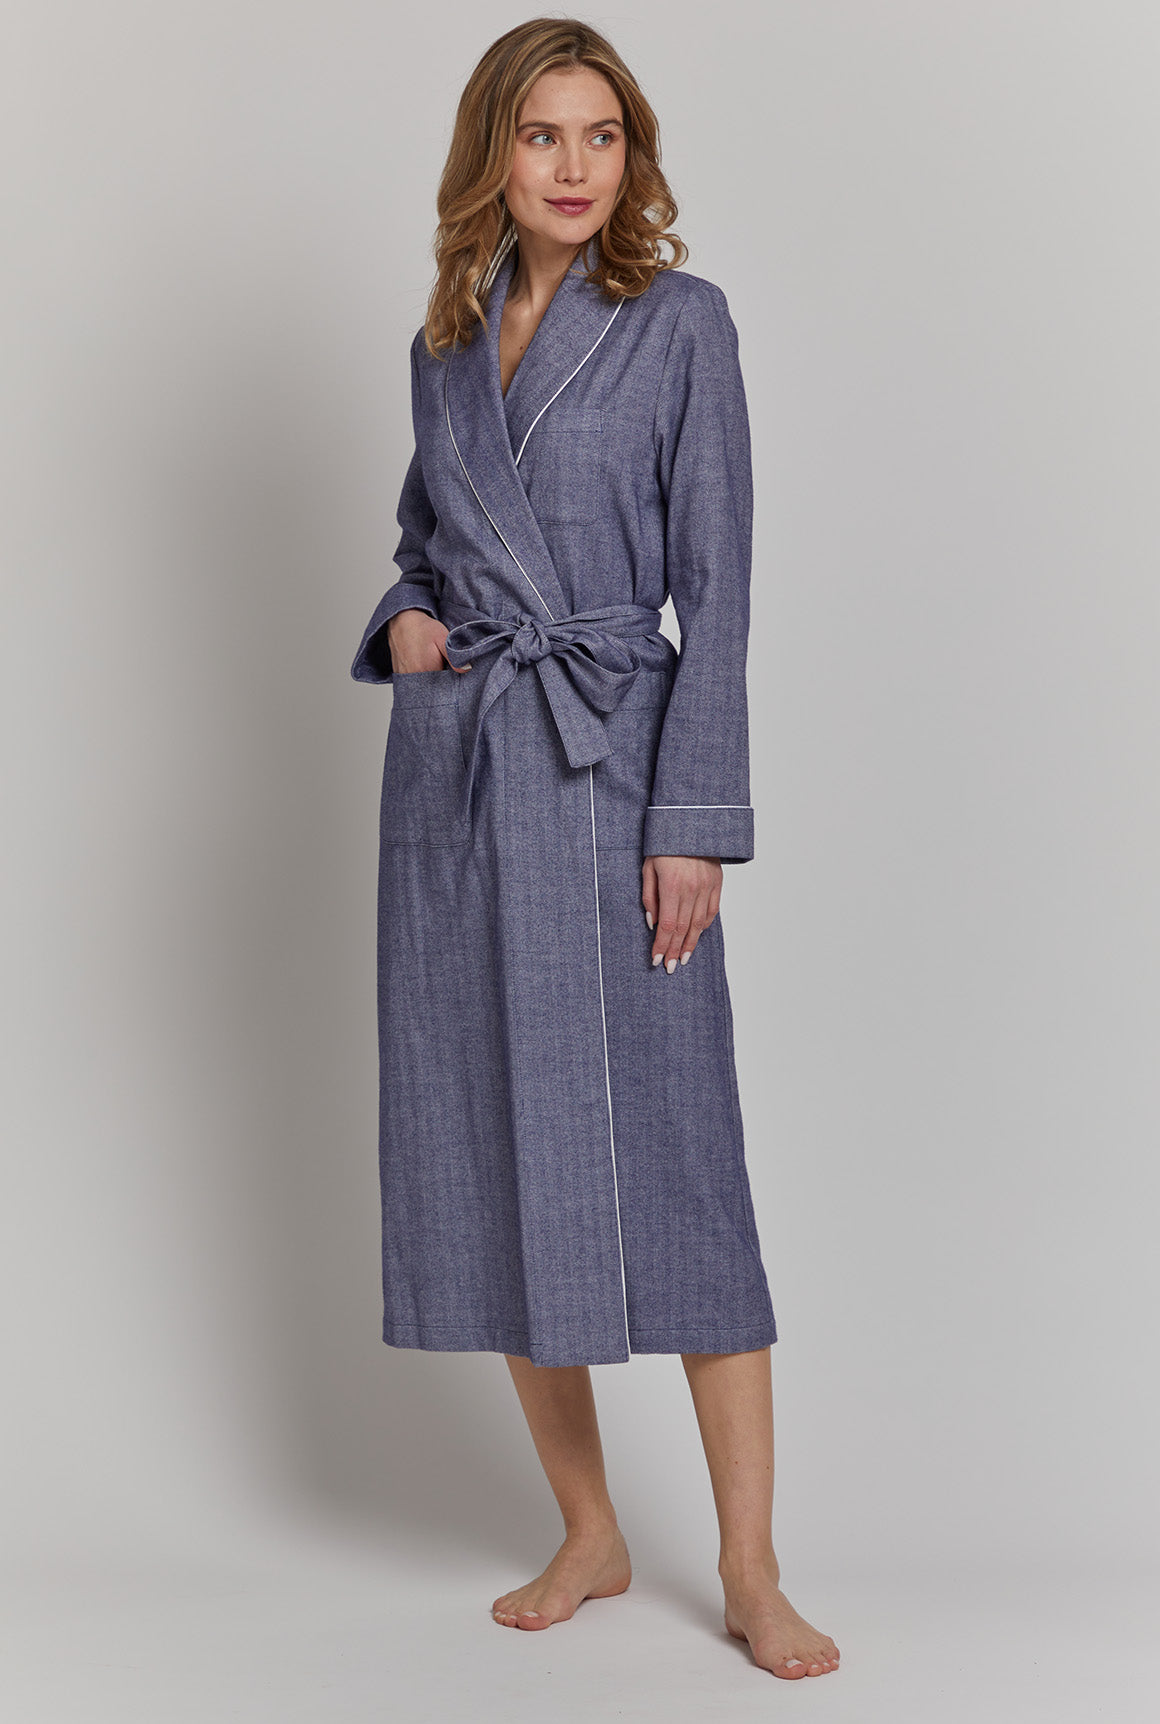 KINOW Ladies Flannel Fleece Dressing Gown Long Bathrobe Cozy Loungewear  Housecoat M Light Purple - ShopStyle Nightdresses